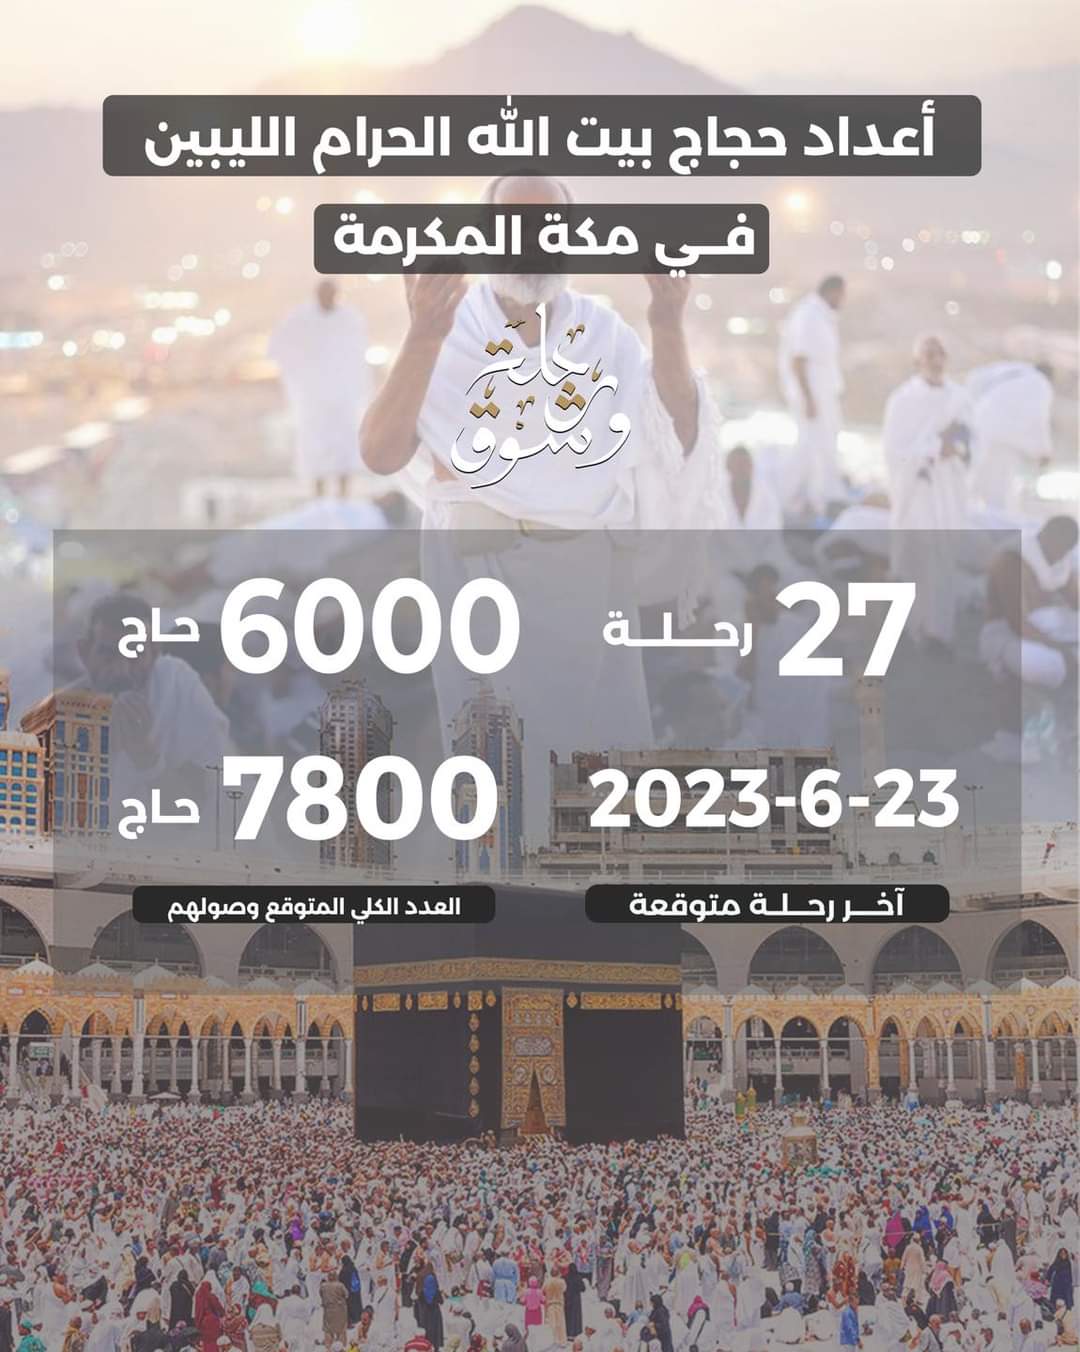 وصول 6000 حاج ليبي إلى مكة المكرمة